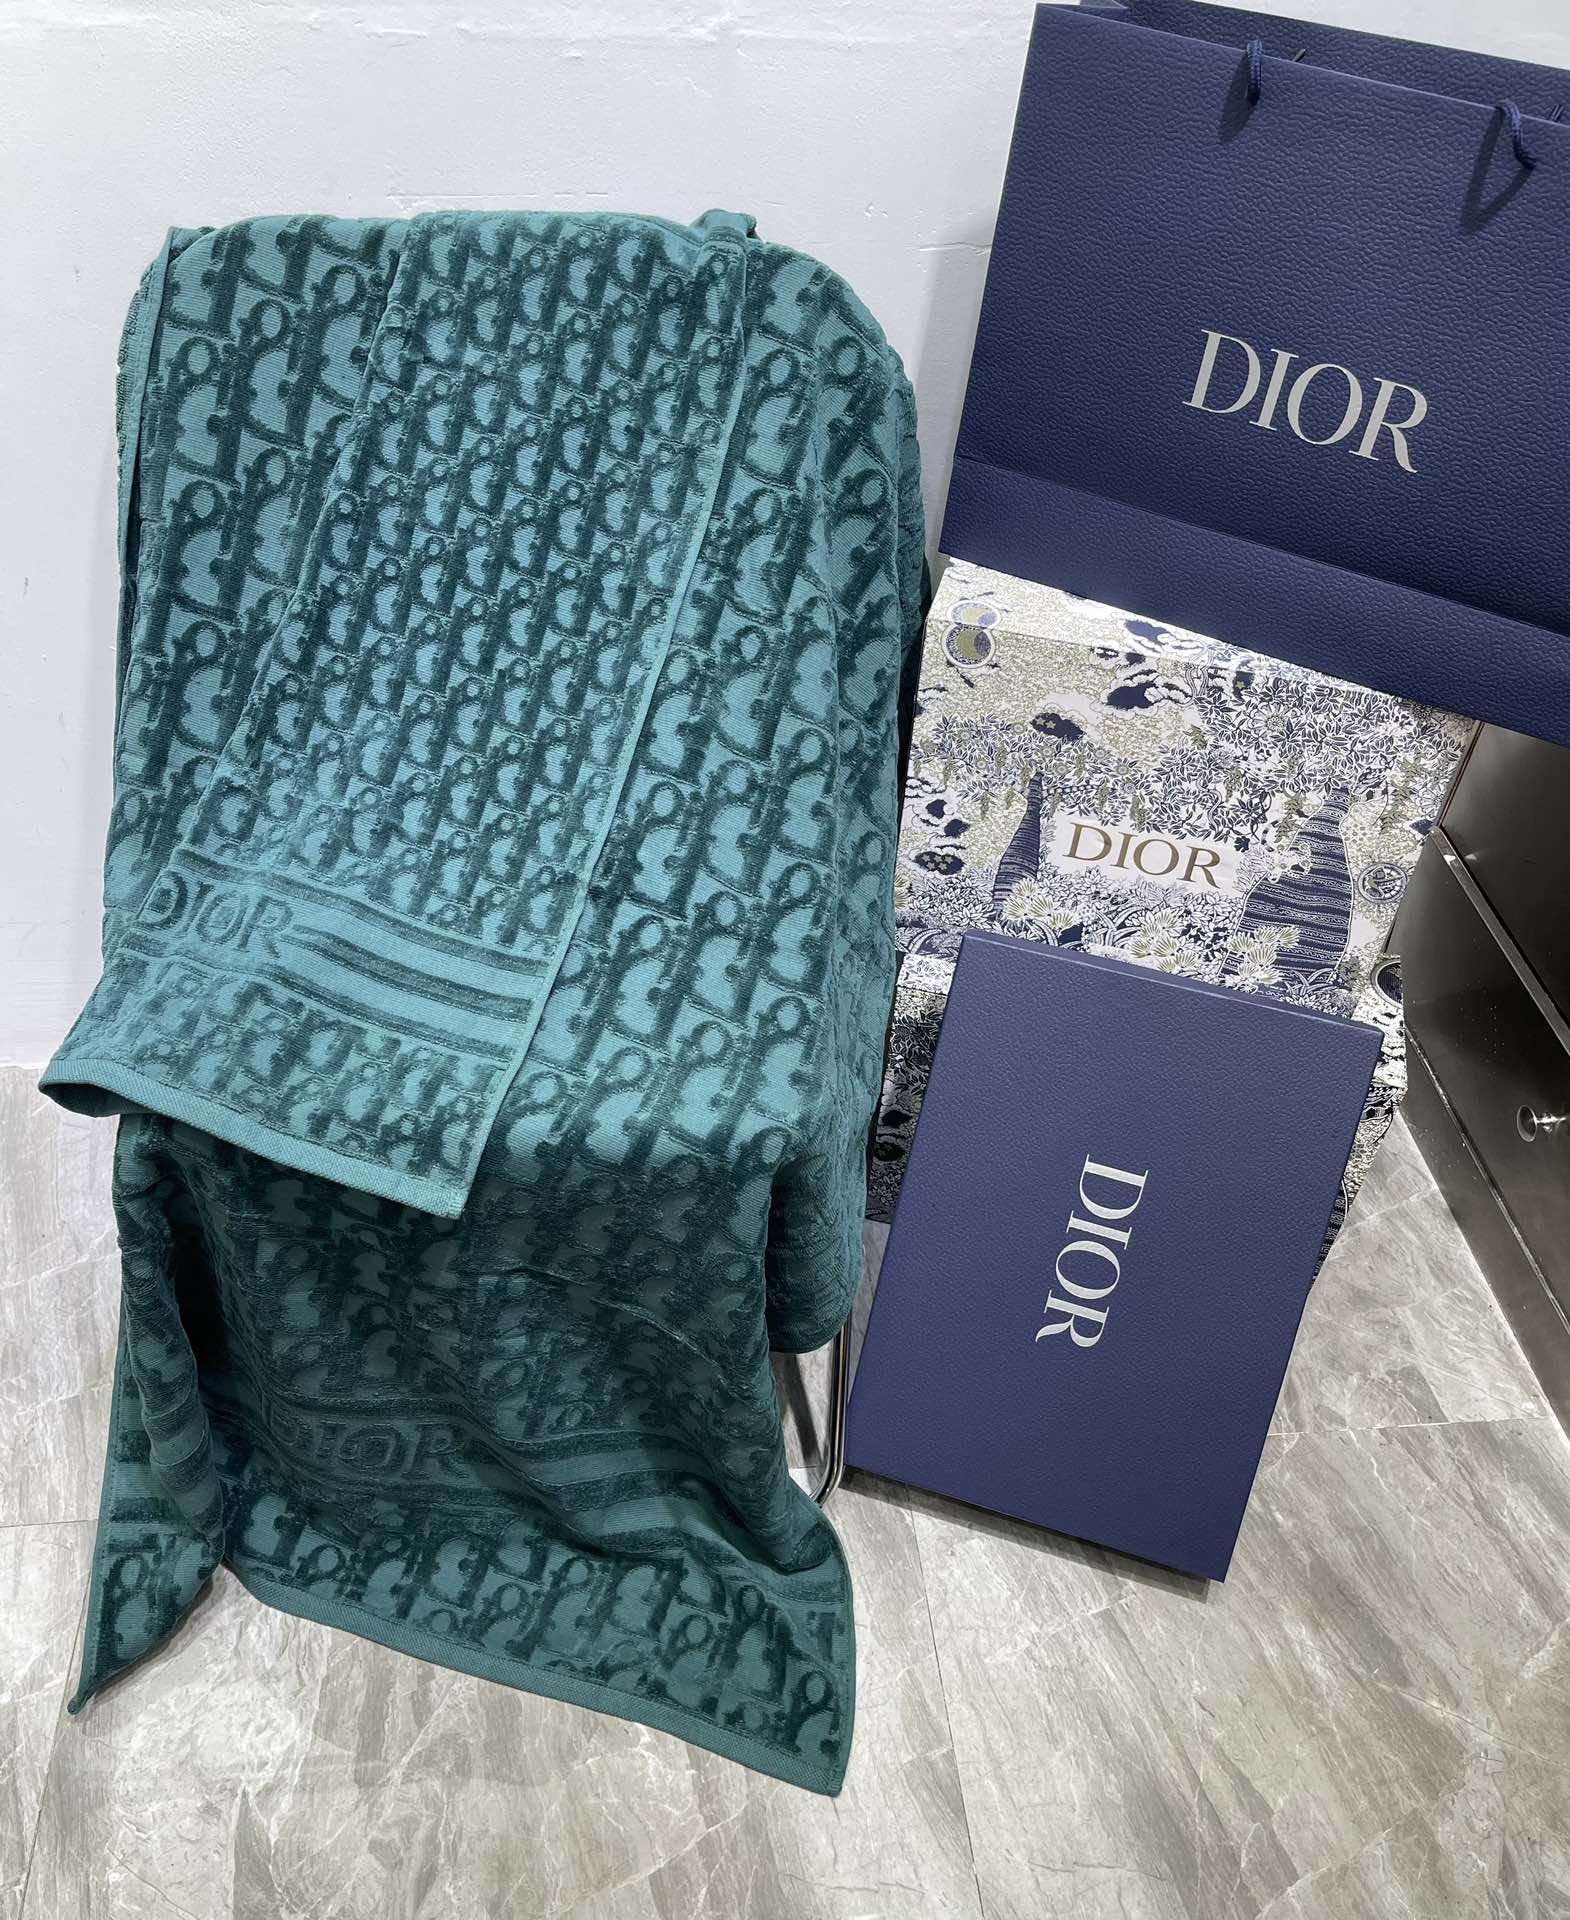 Christian Dior Bath Towel